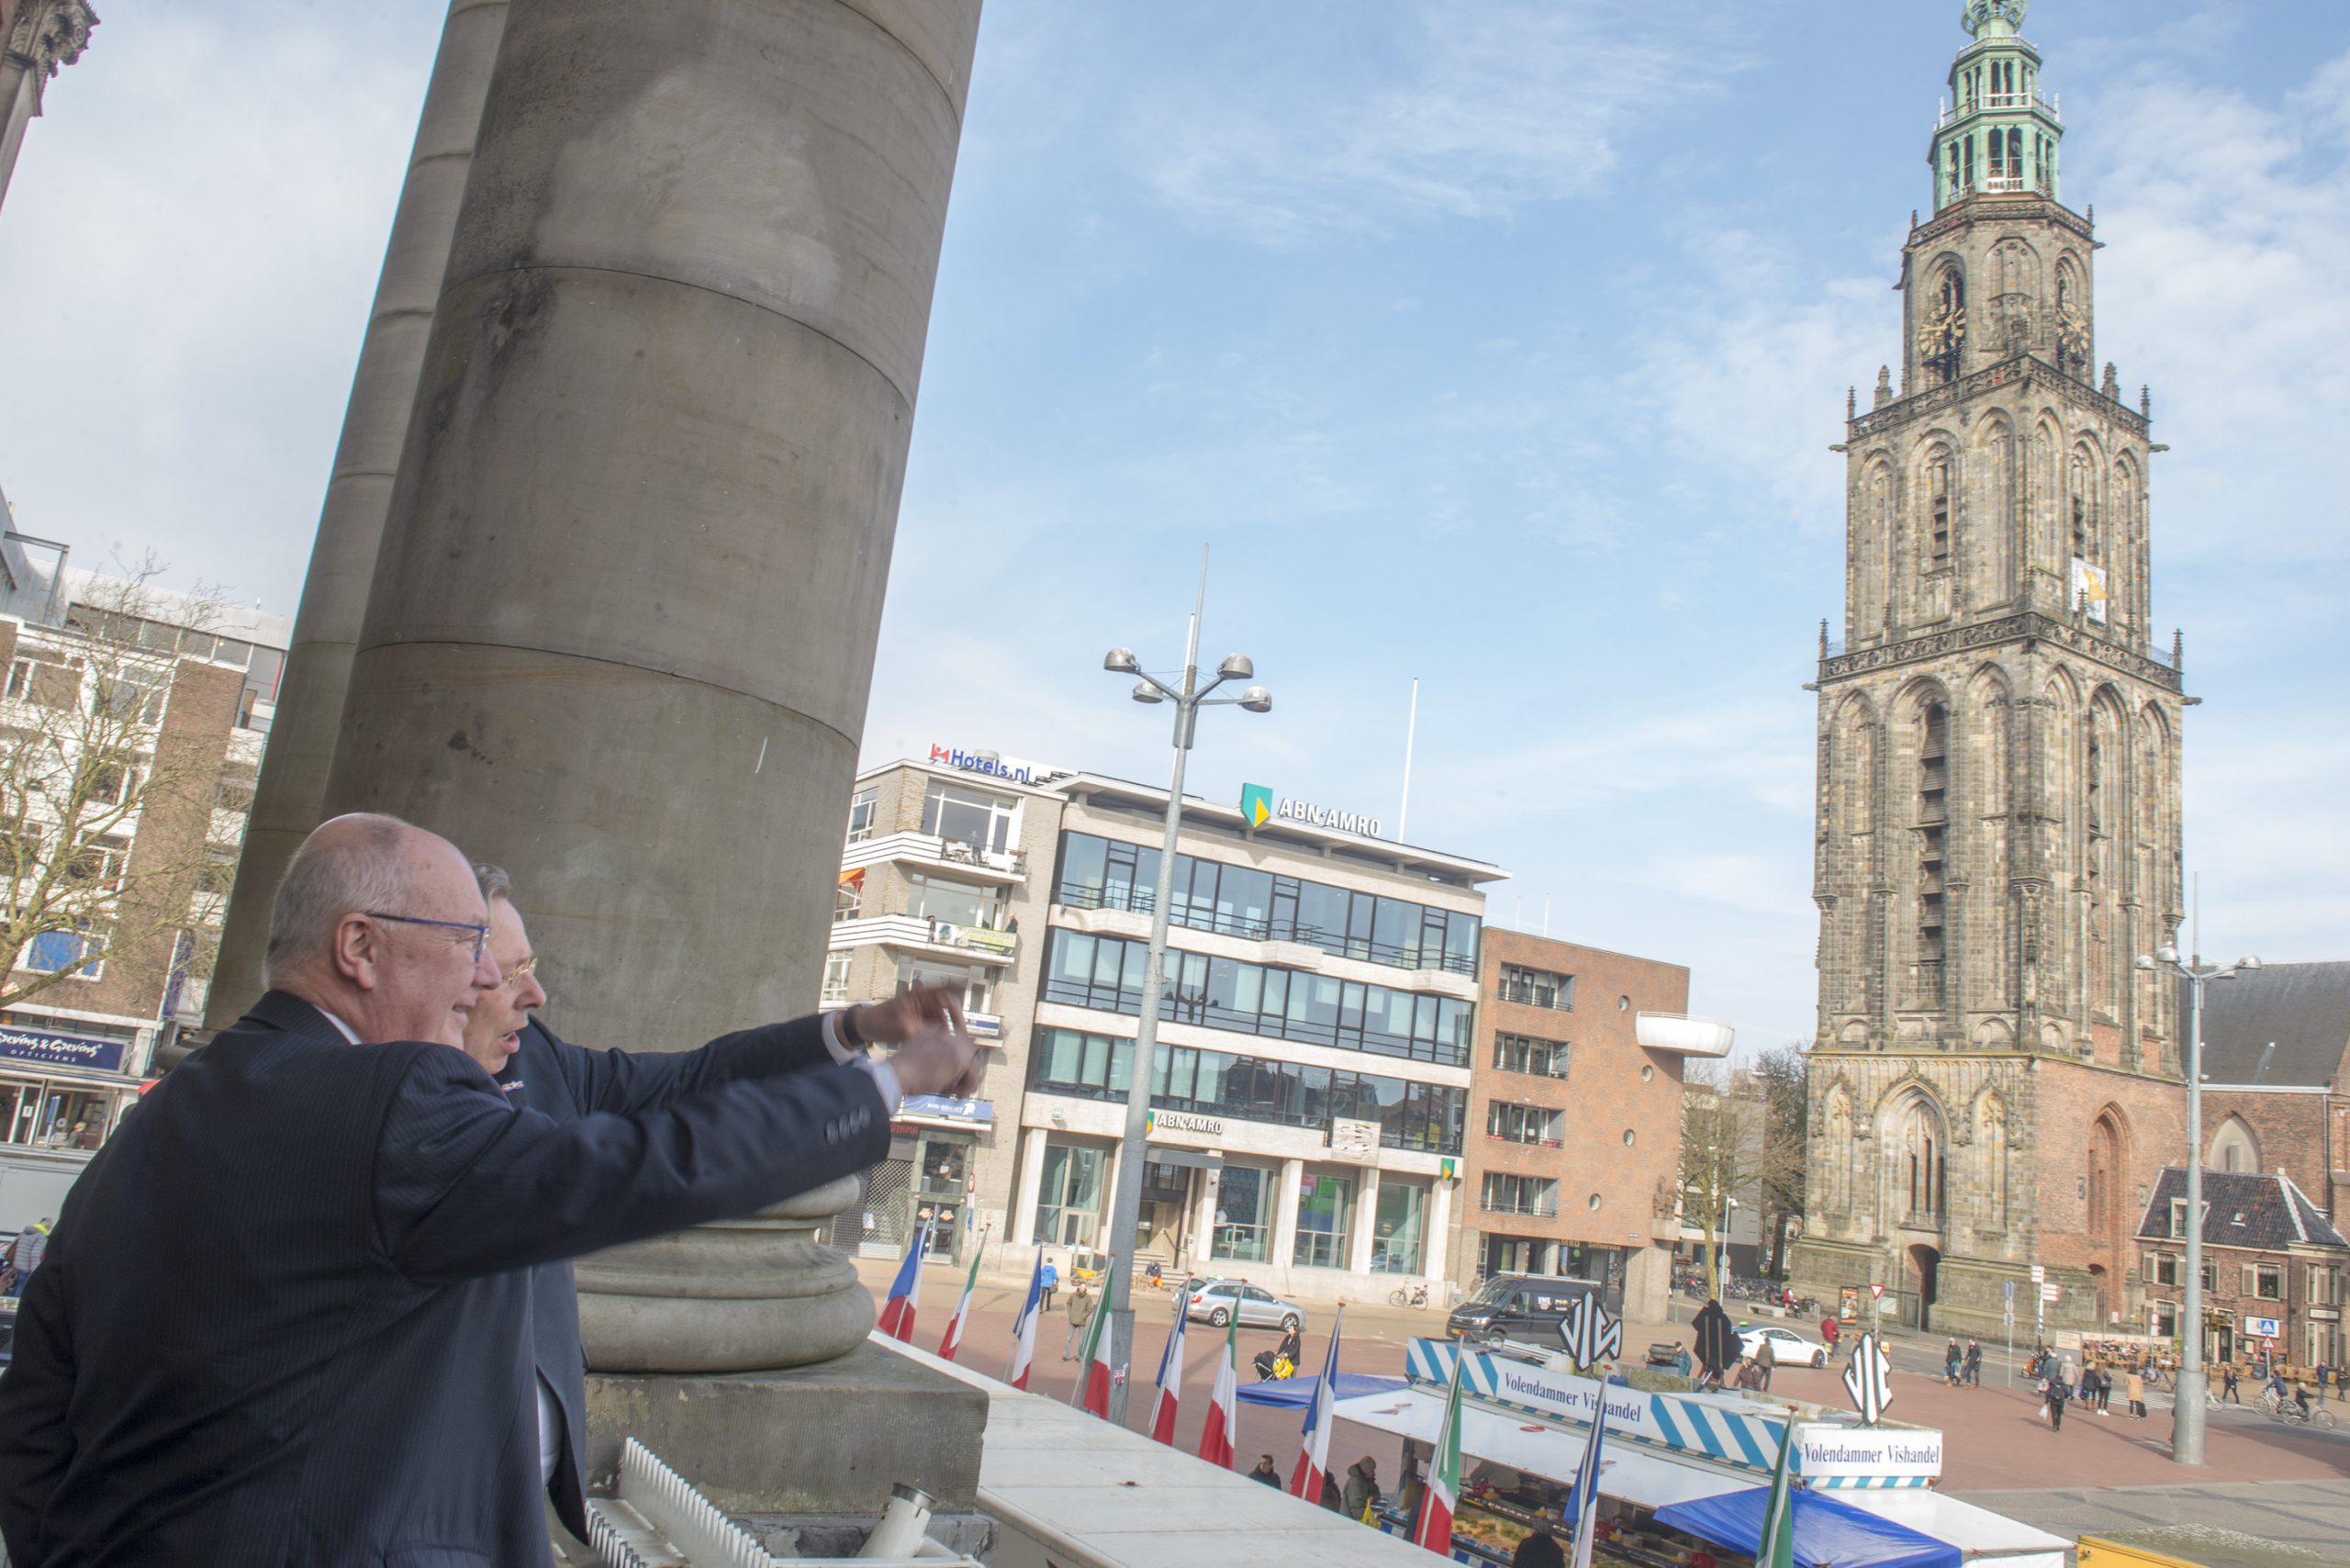 Burgemeester Peter den Oudsten wijst ambassadeur Pete Hoekstra vanaf het bordes van het stadhuis op de voortgang van de bouw van het Groninger Forum.